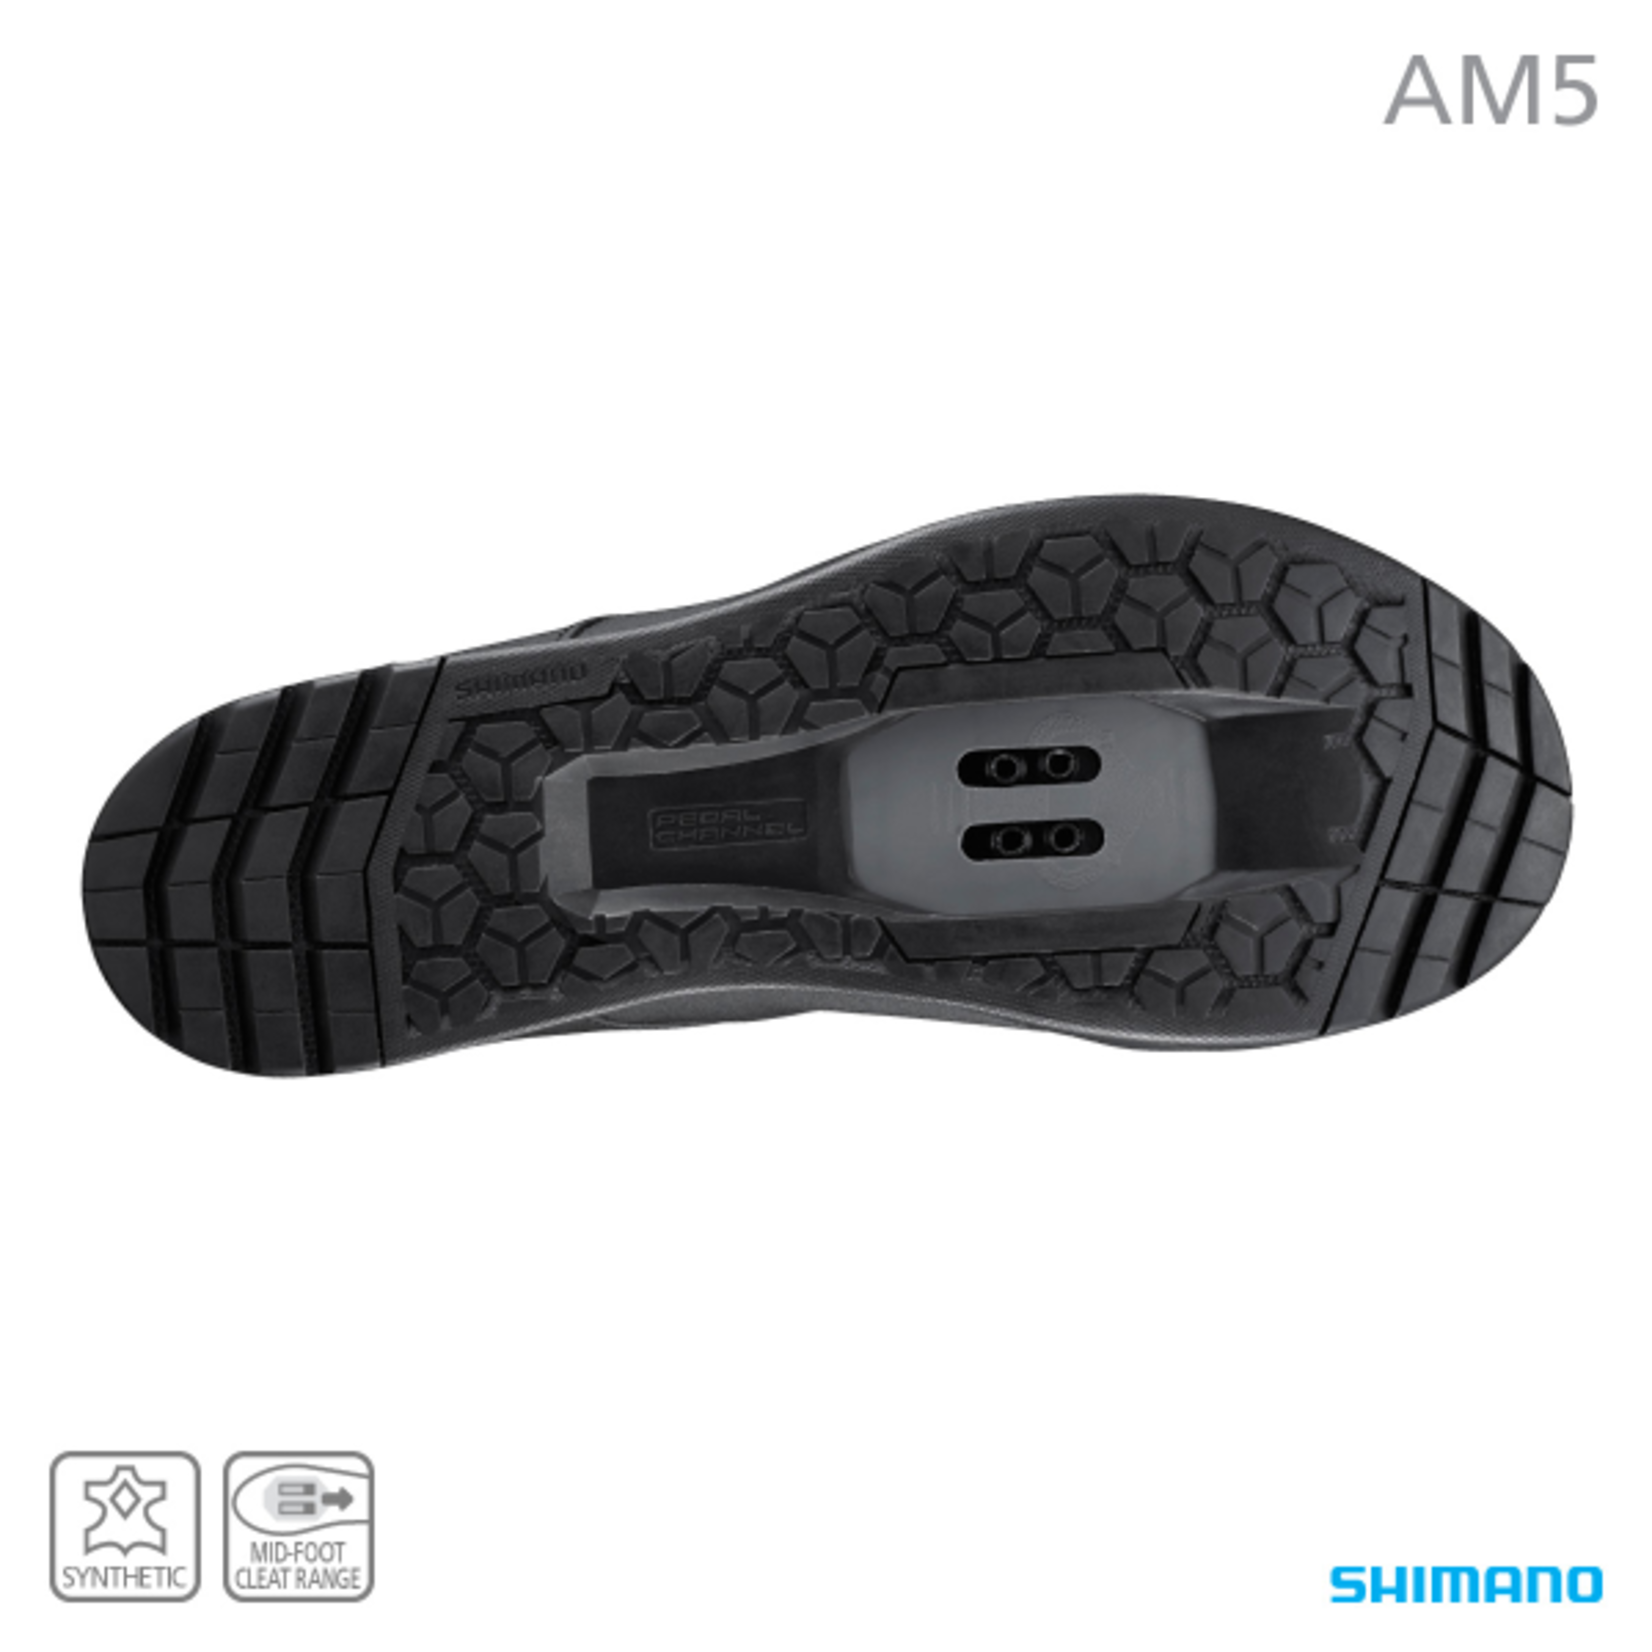 Shimano Shimano Bike/Cycling Shoe SH-AM503 Freeride Shoe - Size 46 - Synthetic Leather